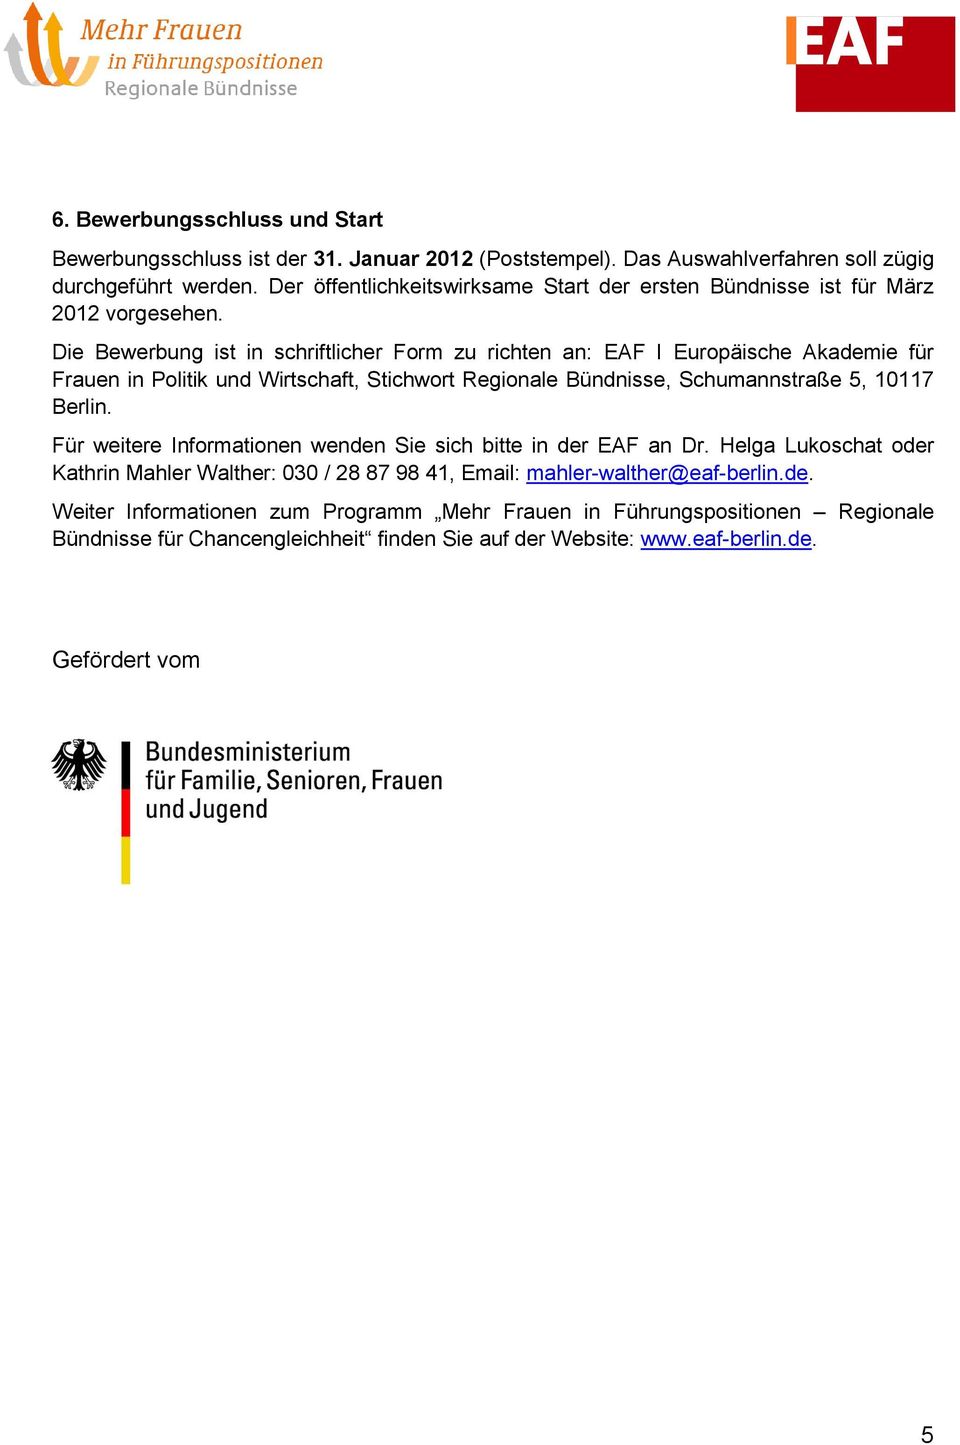 Die Bewerbung ist in schriftlicher Form zu richten an: EAF I Europäische Akademie für Frauen in Politik und Wirtschaft, Stichwort Regionale Bündnisse, Schumannstraße 5, 10117 Berlin.